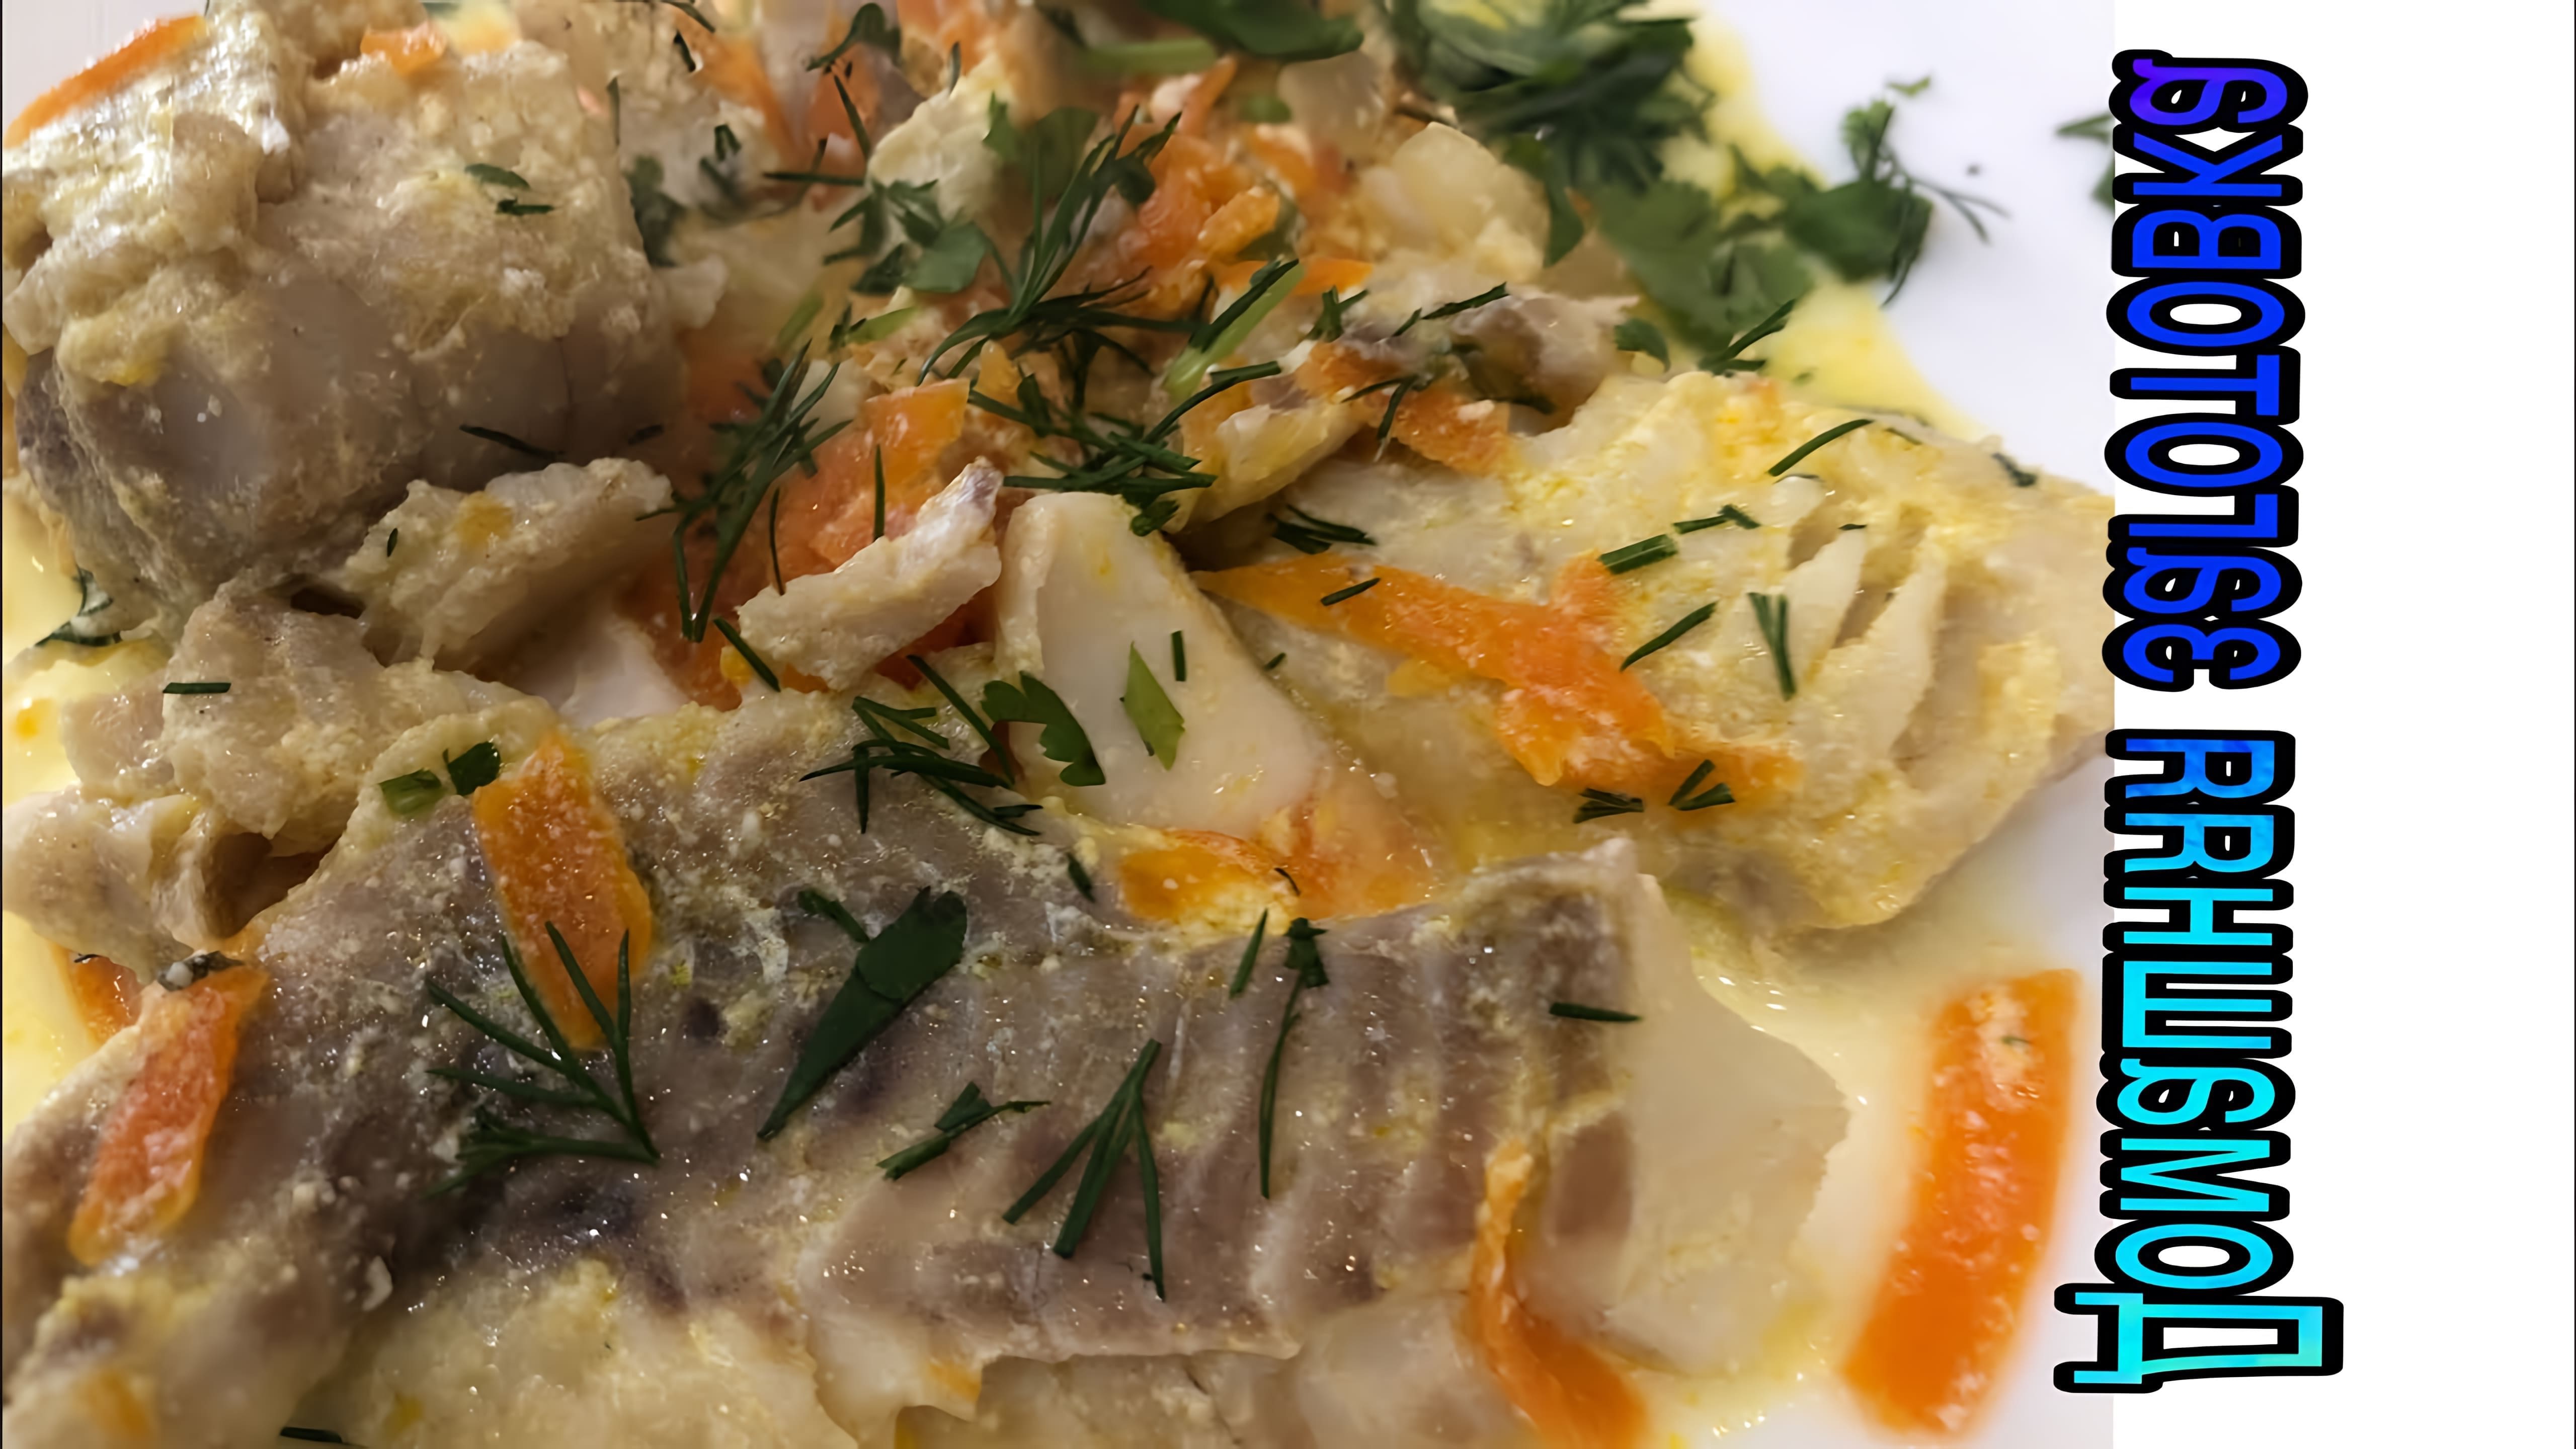 В этом видео демонстрируется процесс приготовления рыбы (минтая) в сметанном соусе на сковороде